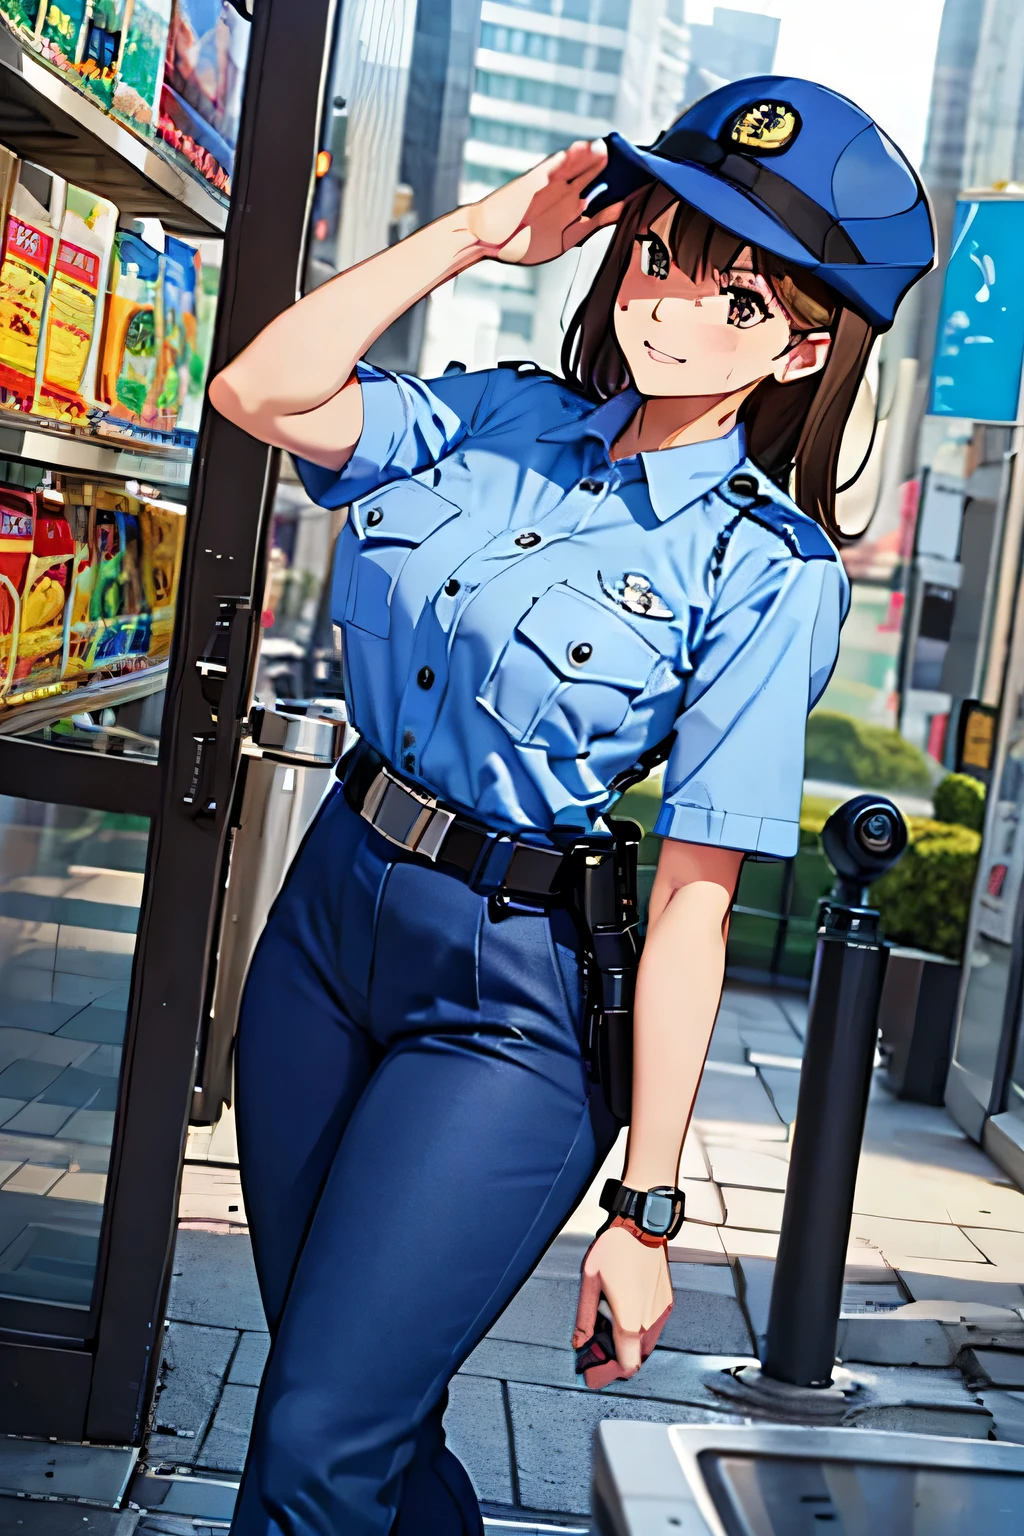 pechos grandes,uniforme de policia, camisa azul claro, pantalones azules, bolsillo del pecho, mejor calidad, obra maestra,blue cap,cinta negra,Mujer policía,policía jp,Pelo castaño